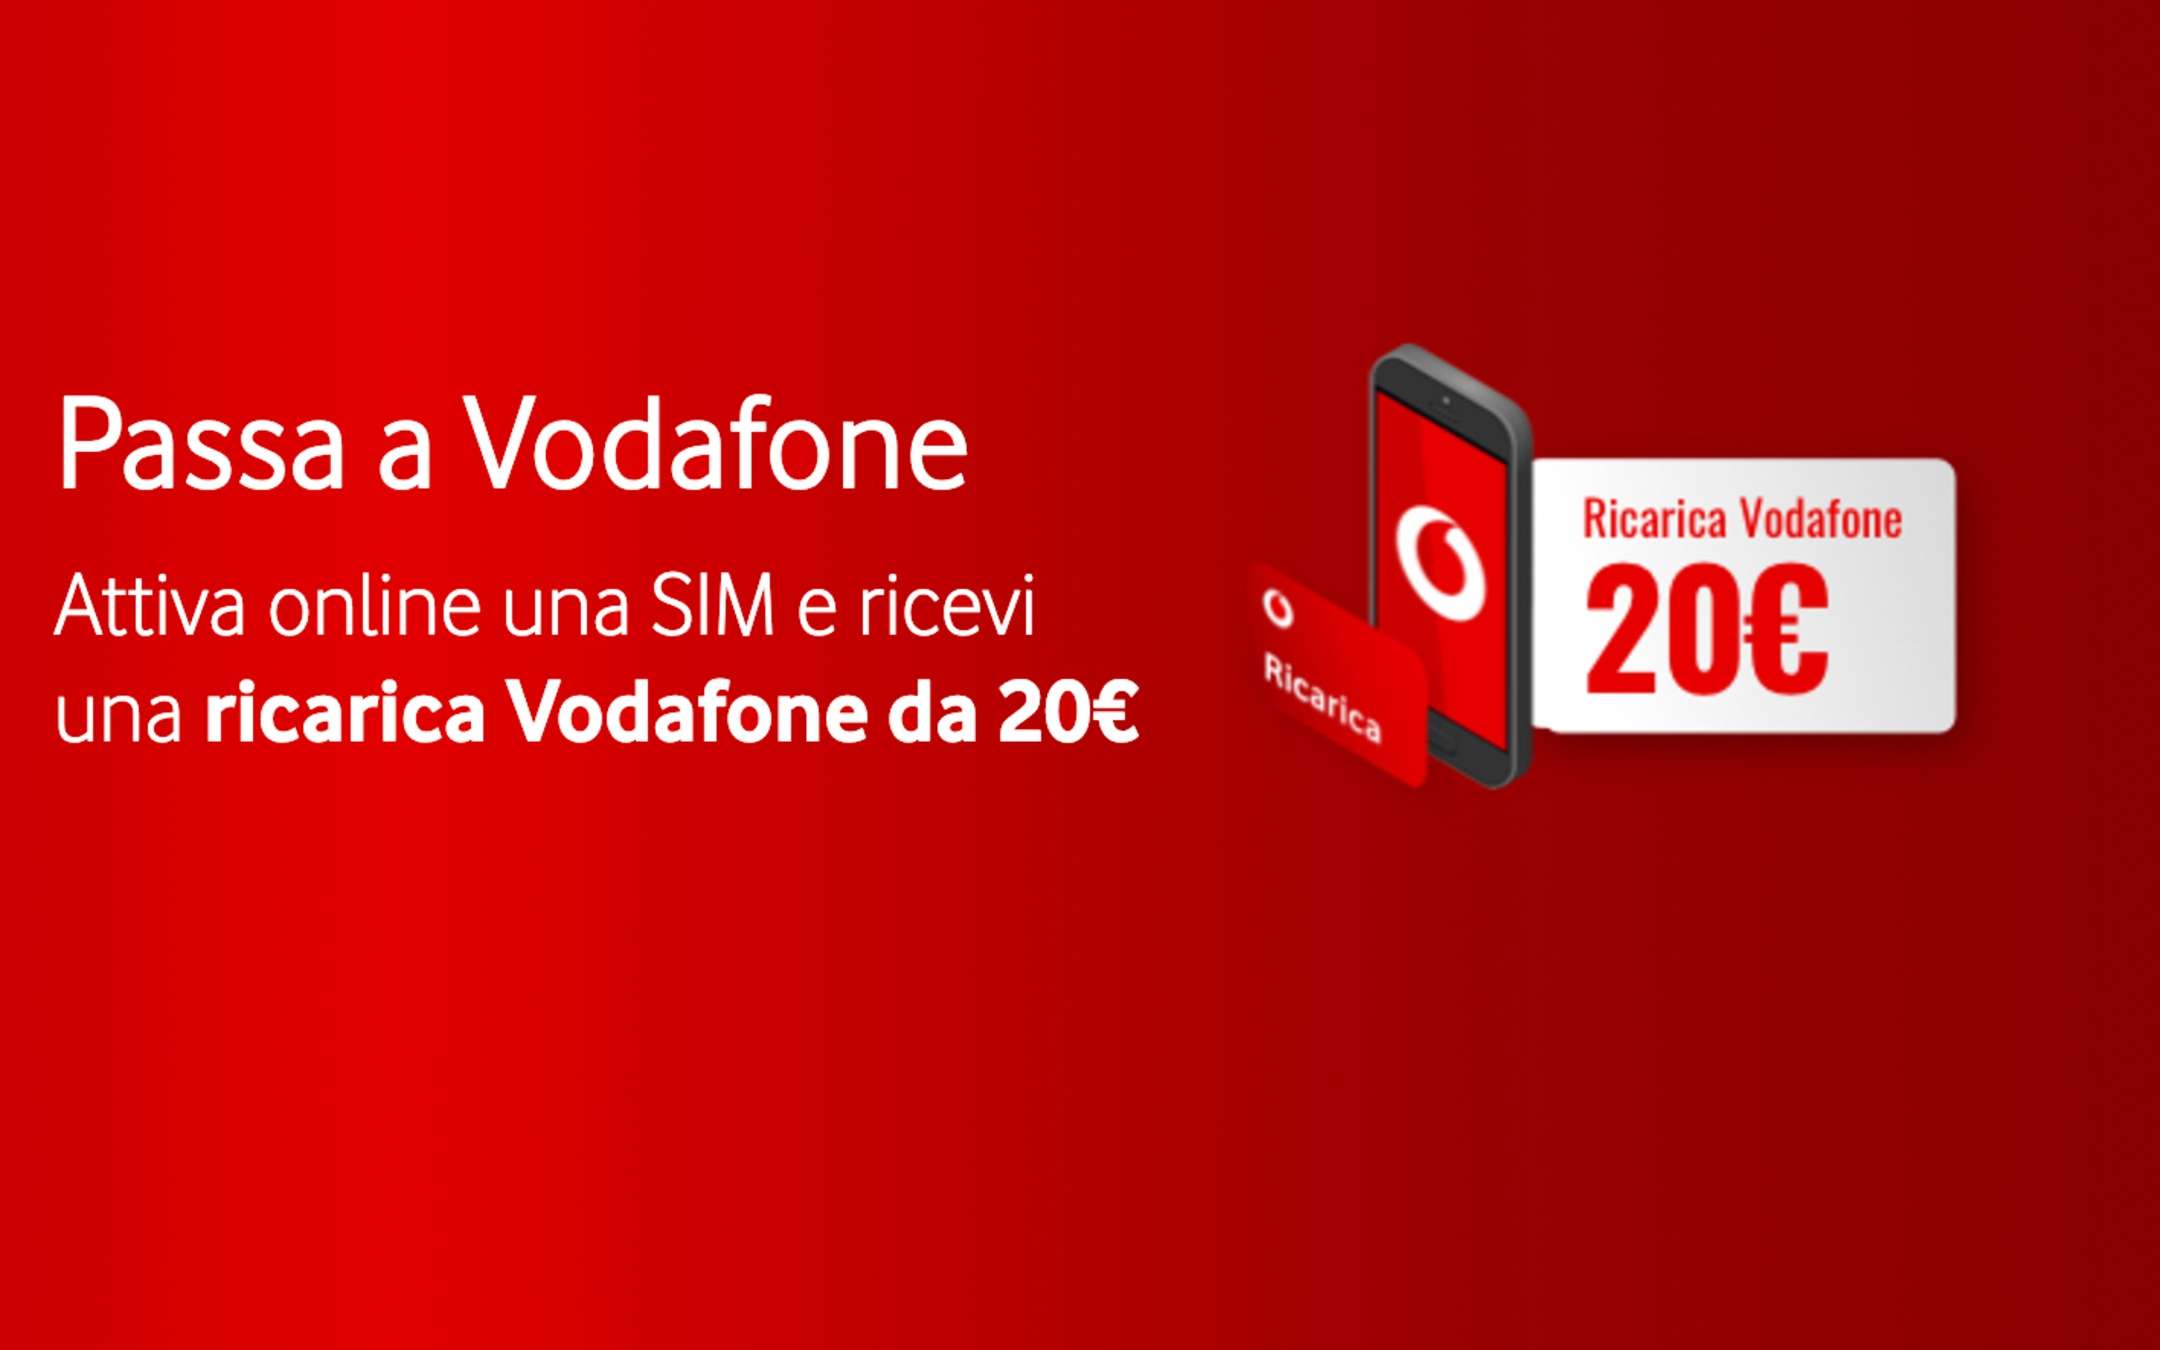 Vodafone: 20 euro di ricarica omaggio, scopri come